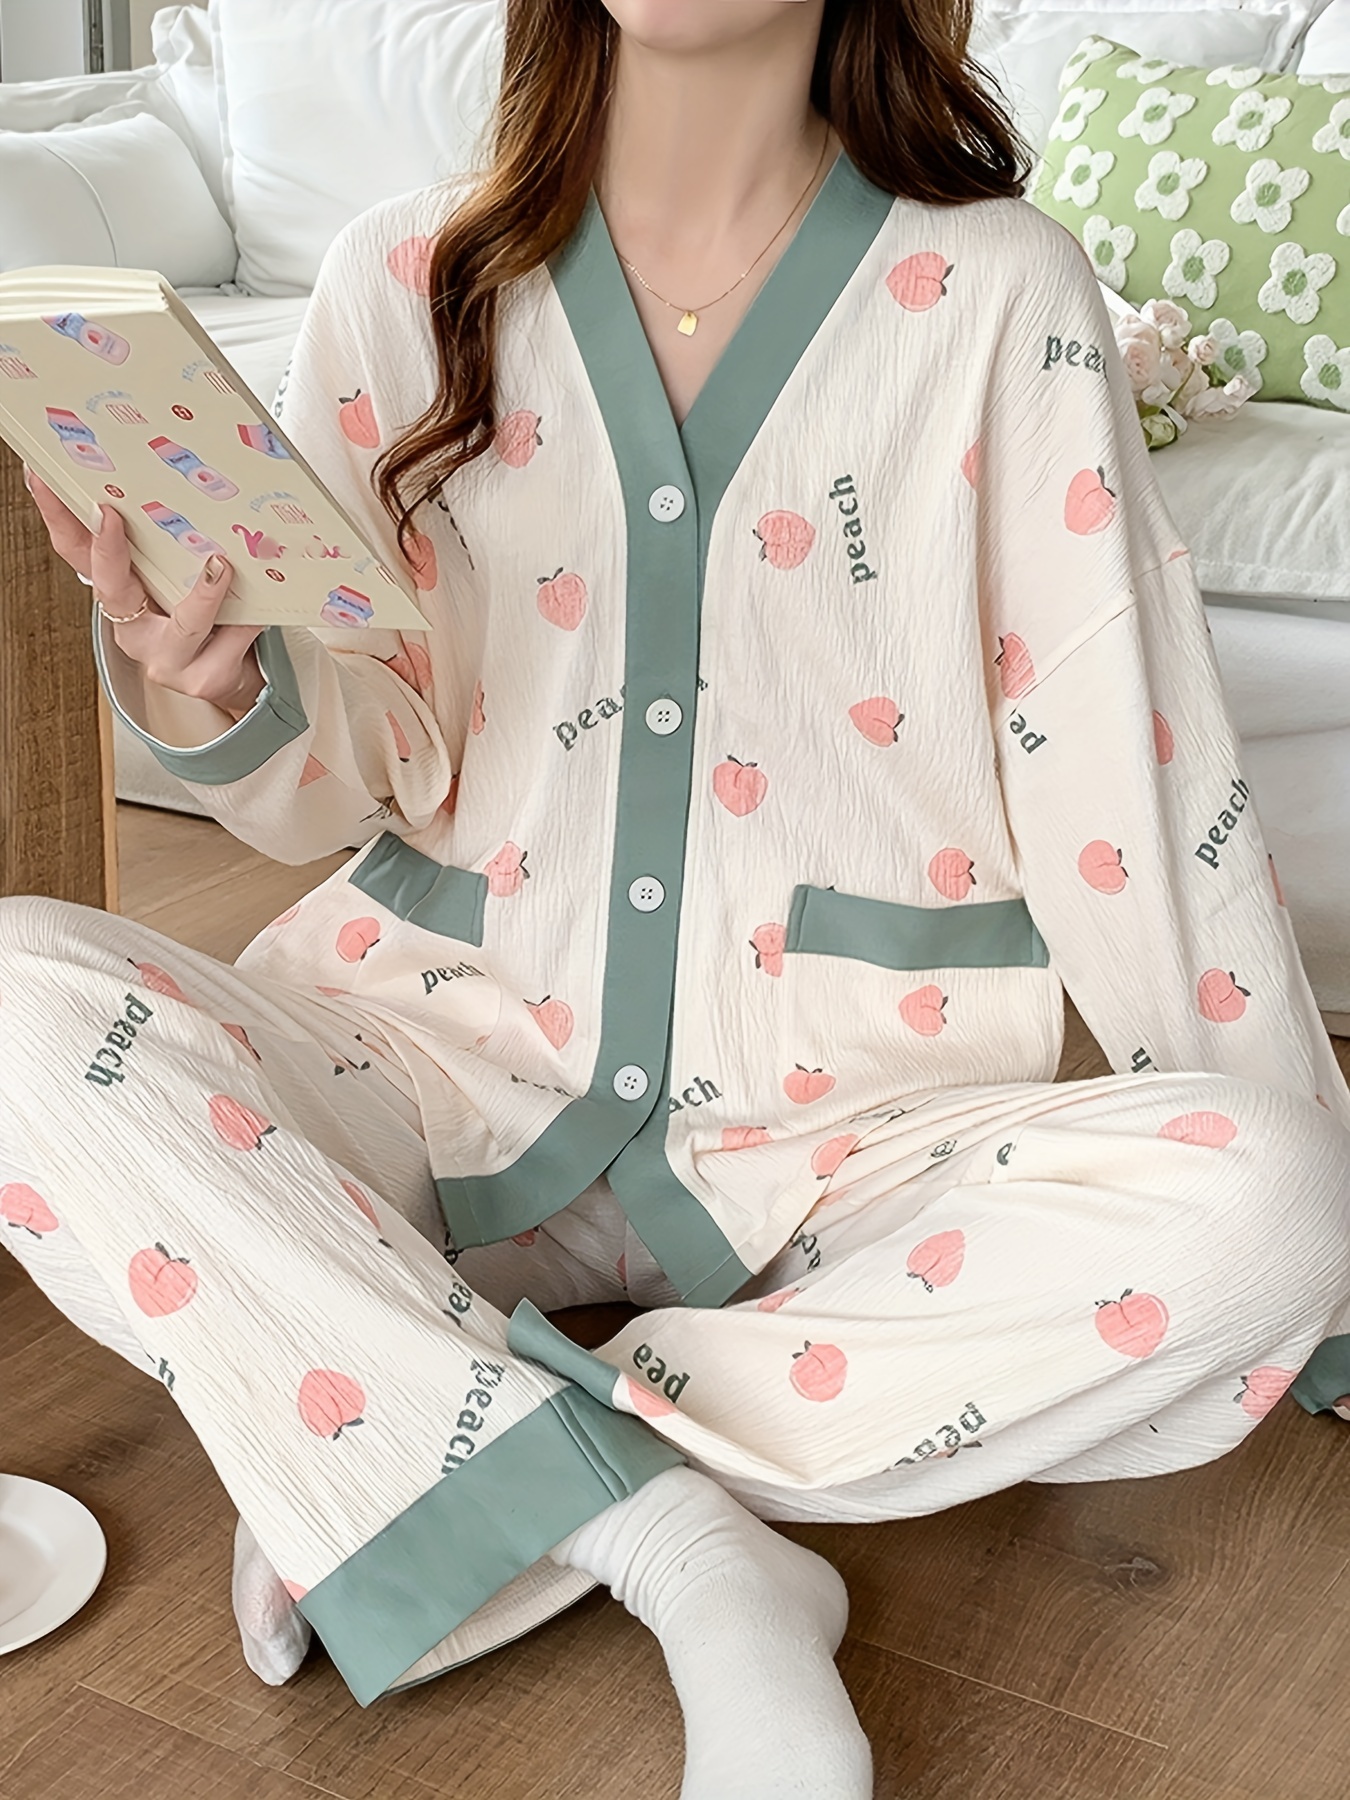 Cotton Night Suit Sleepwear, Cotton Pajamas Set